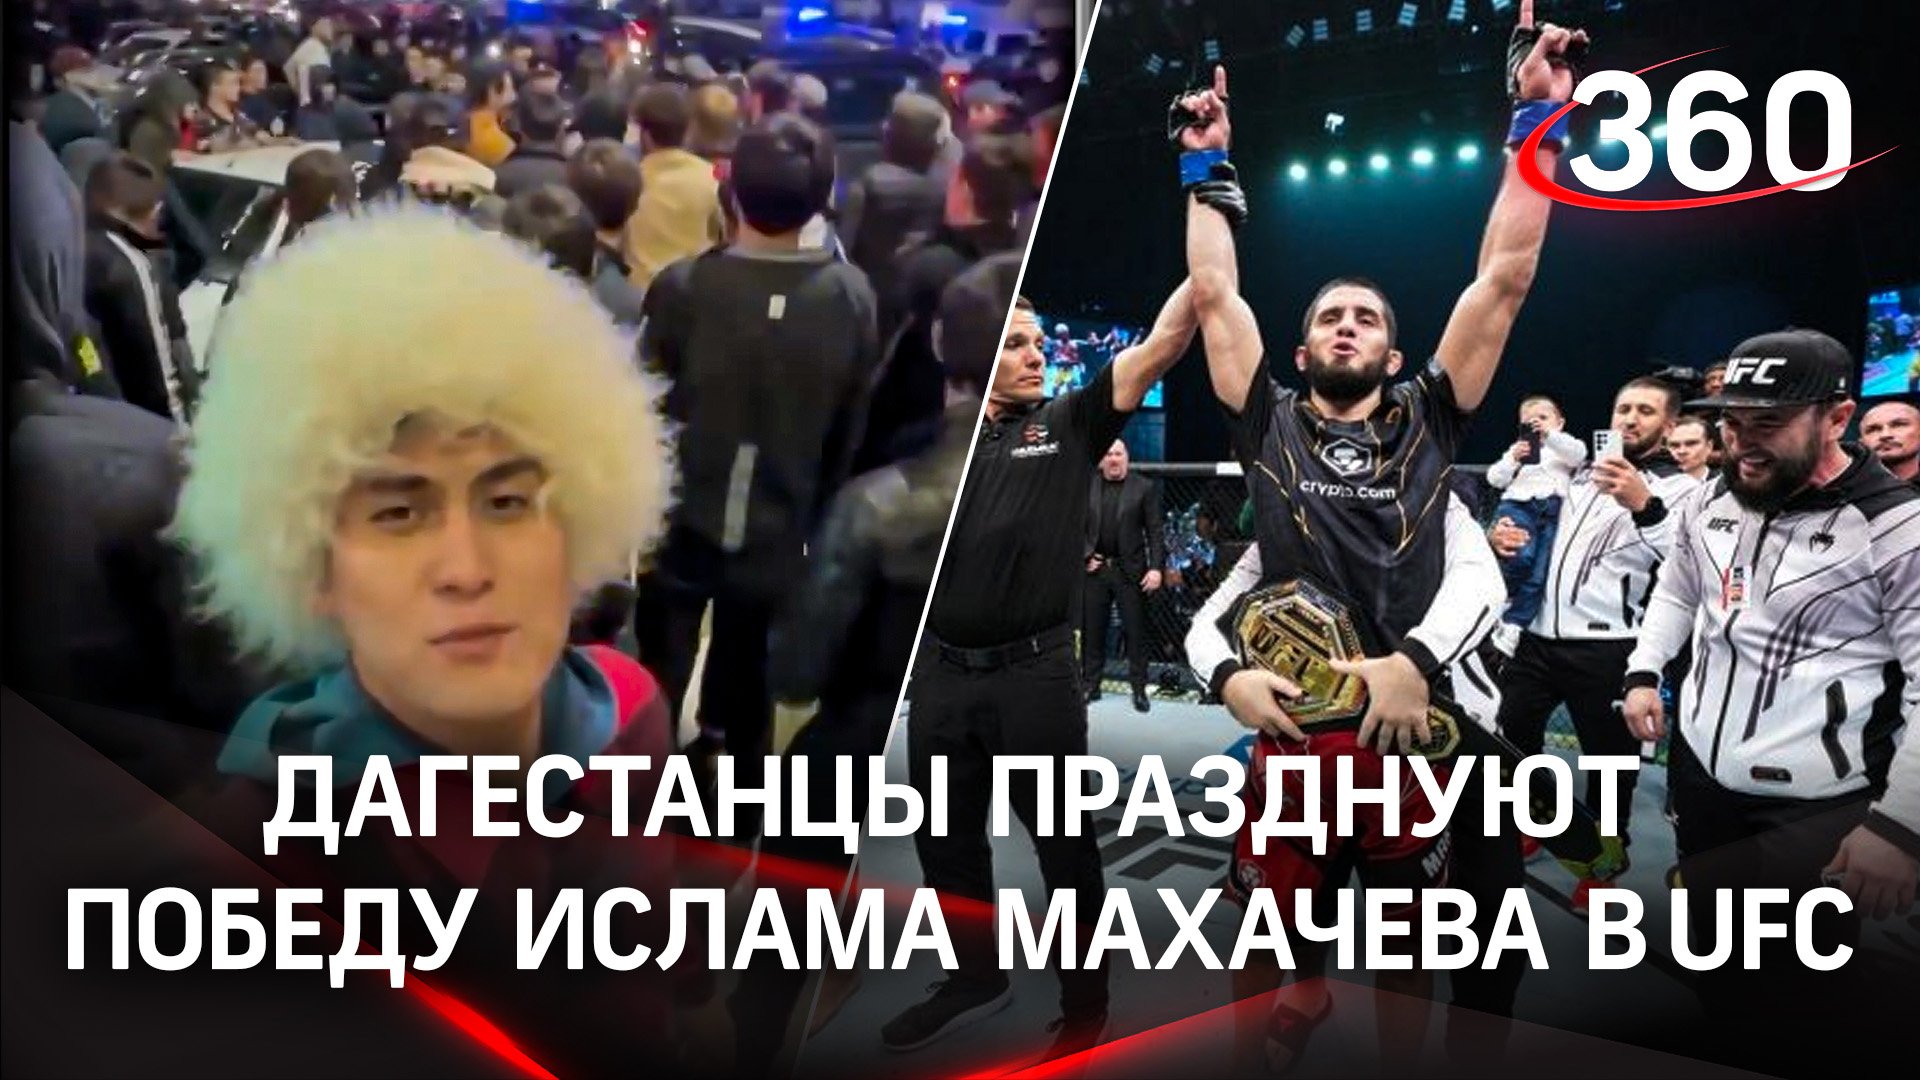 Дагестанцы на улицах празднуют победу Ислама Махачева в UFC